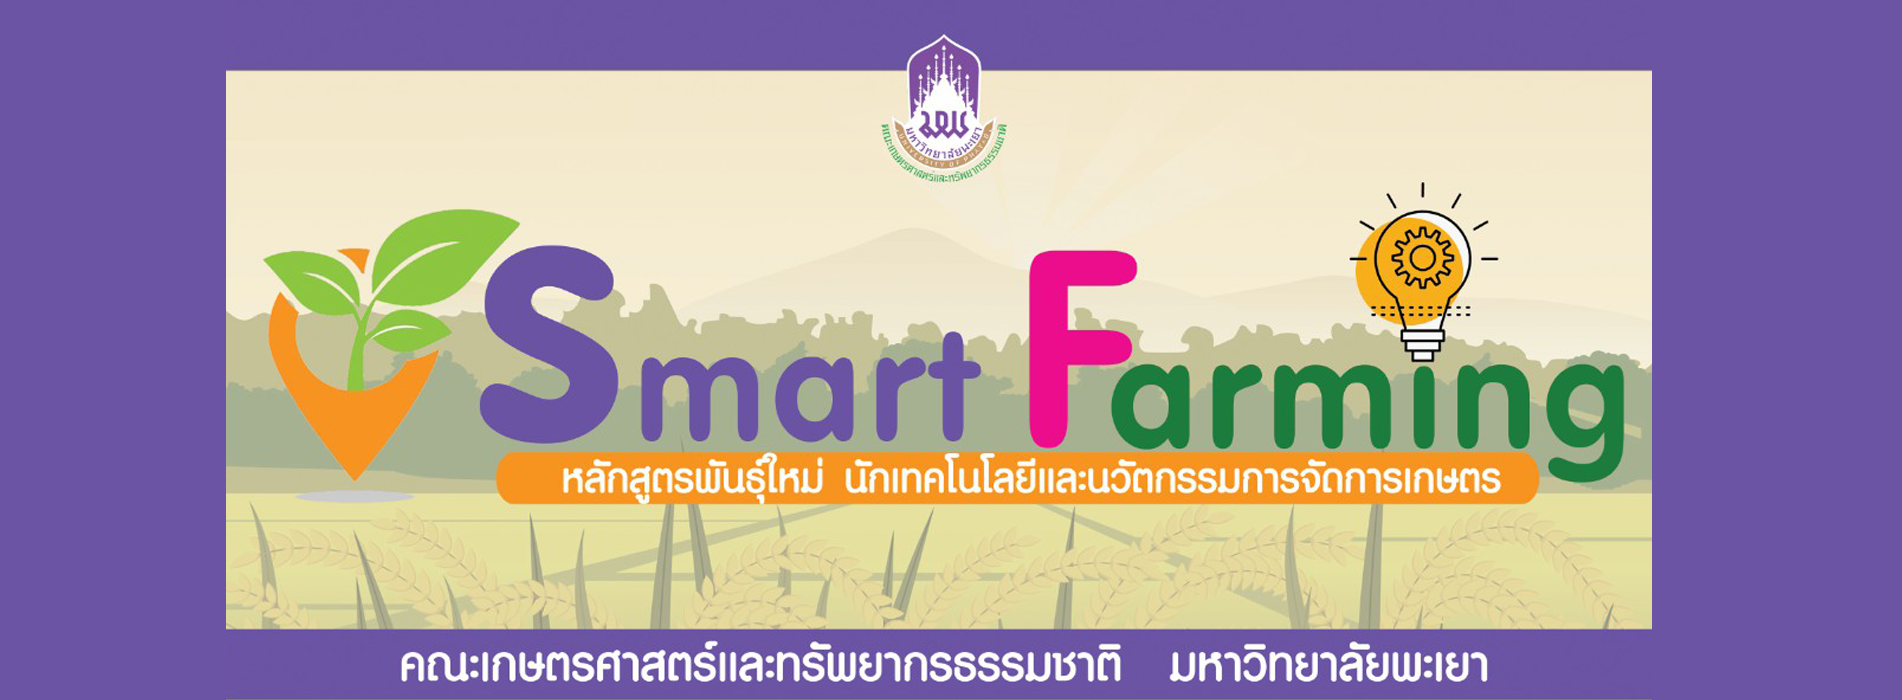 ประกาศรายชื่อผู้มีสิทธิ์เข้าเรียน "นักเทคโนโลยีและนวัตกรรมการจัดการเกษตรสู่ Smart Farming รุ่นที่ 3"